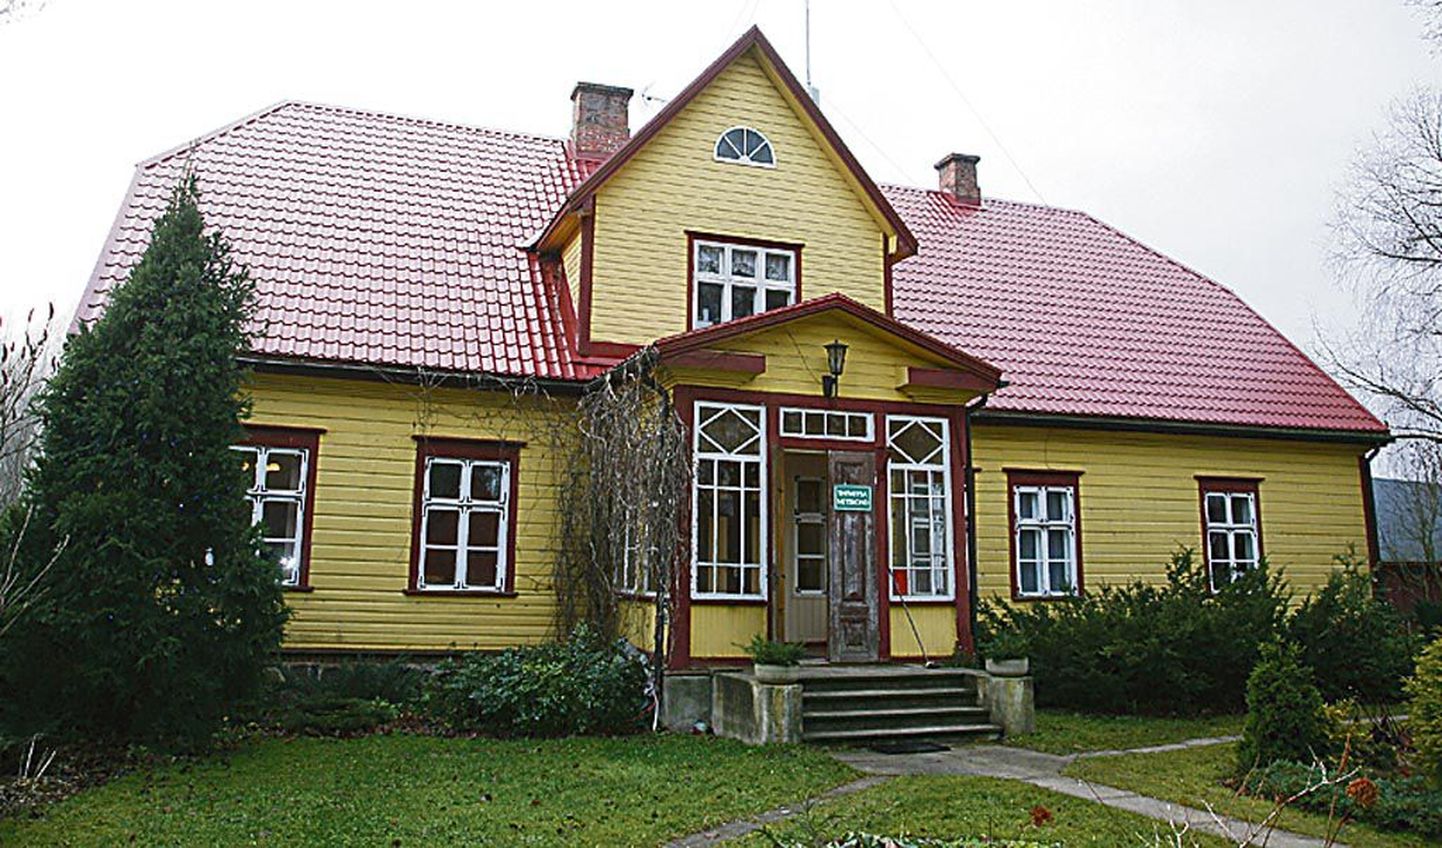 Voltveti mõisa metsahärrale ehitatud puidust häärber on Kärsu küla süda, siin asub Pärnumaa kutsehariduskeskuse Tihemetsa metskonna kontor.